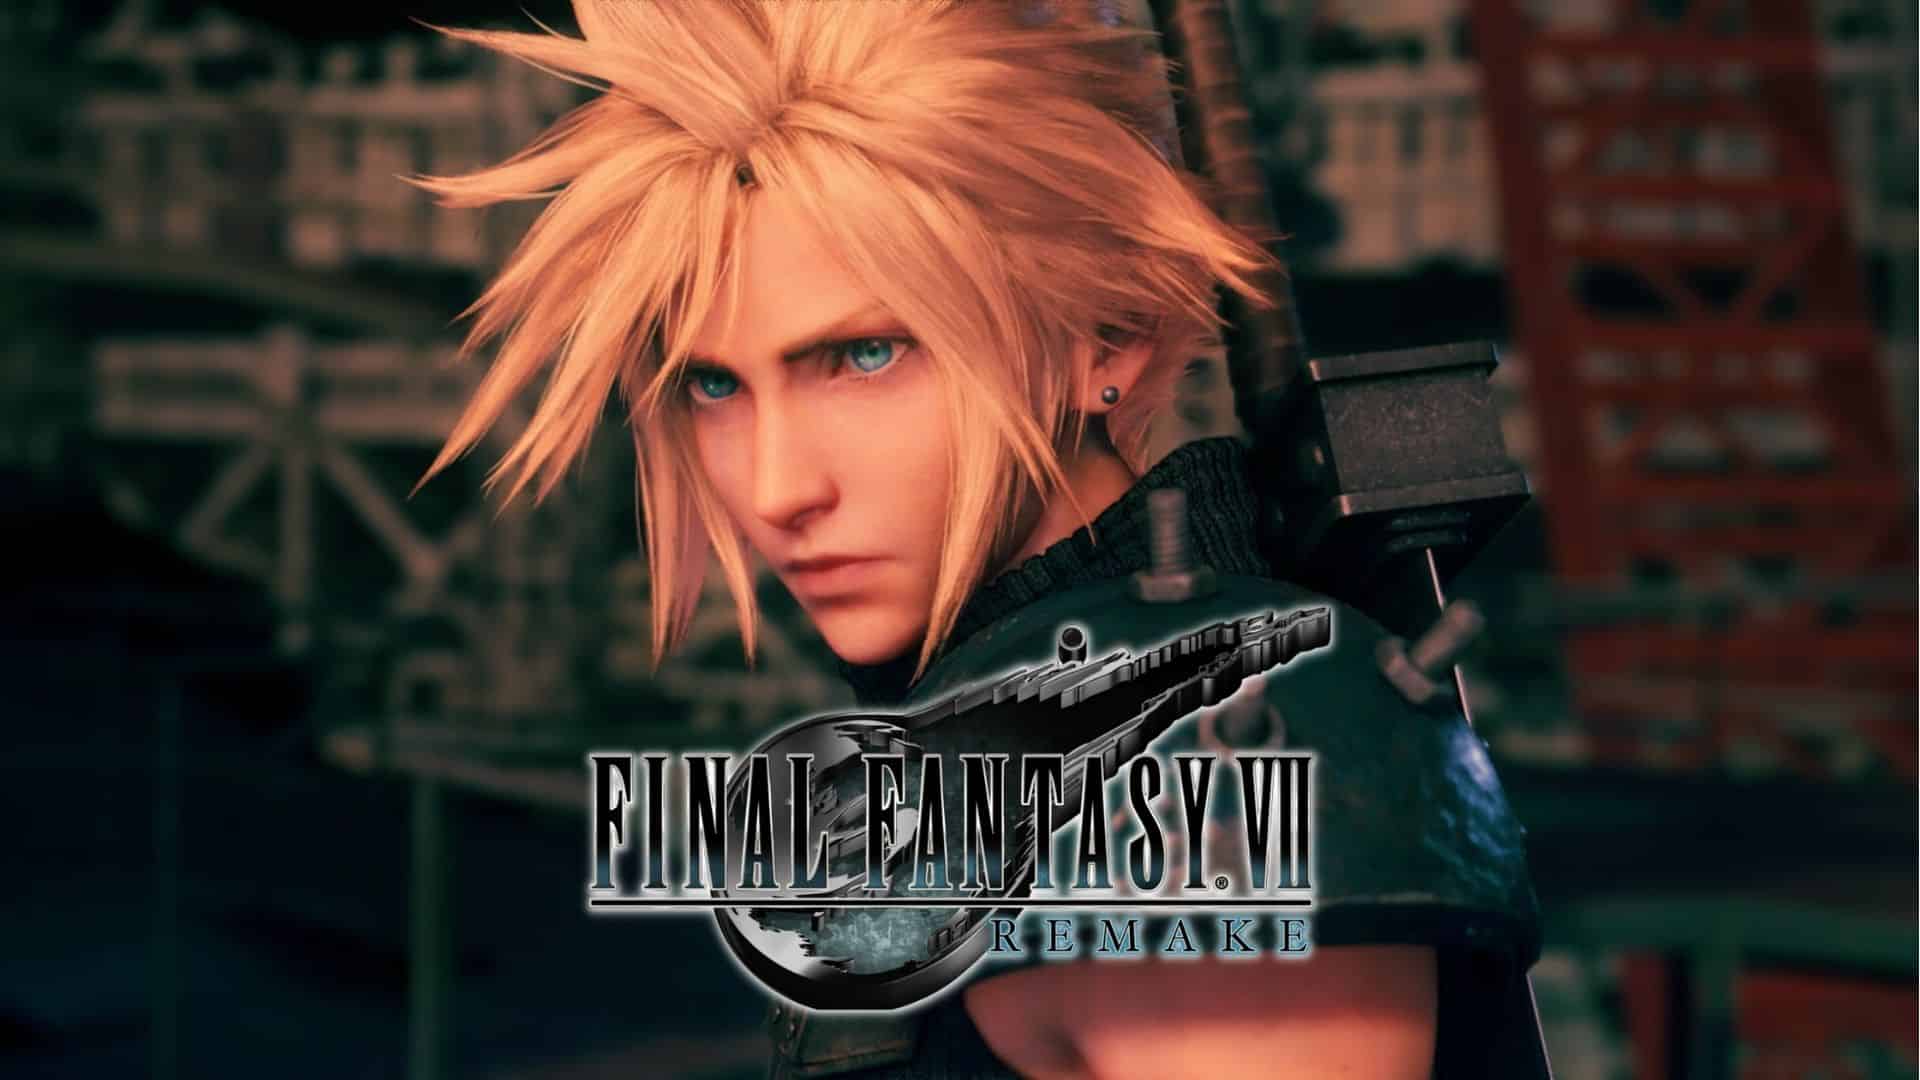 FF7 Remake: Final Fantasy Remake VII for PS4